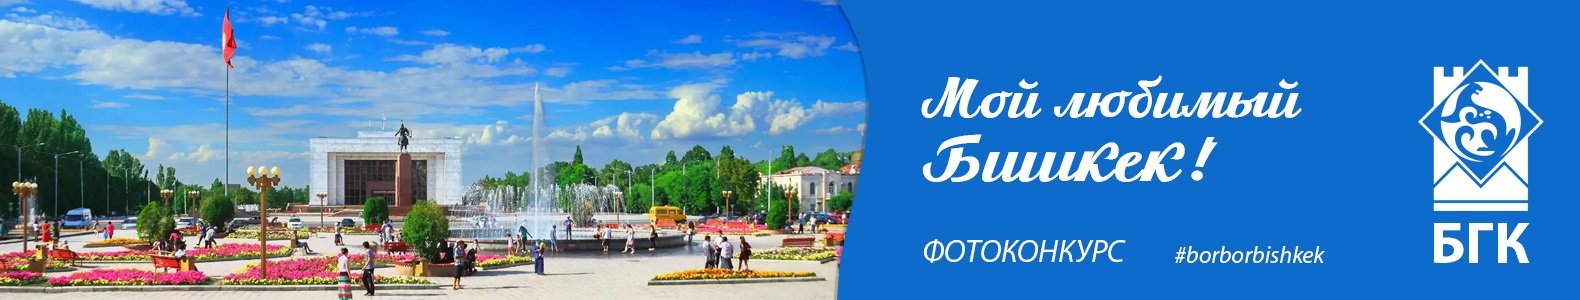 Конкурс детских фотографий "Мой любимый Бишкек!"